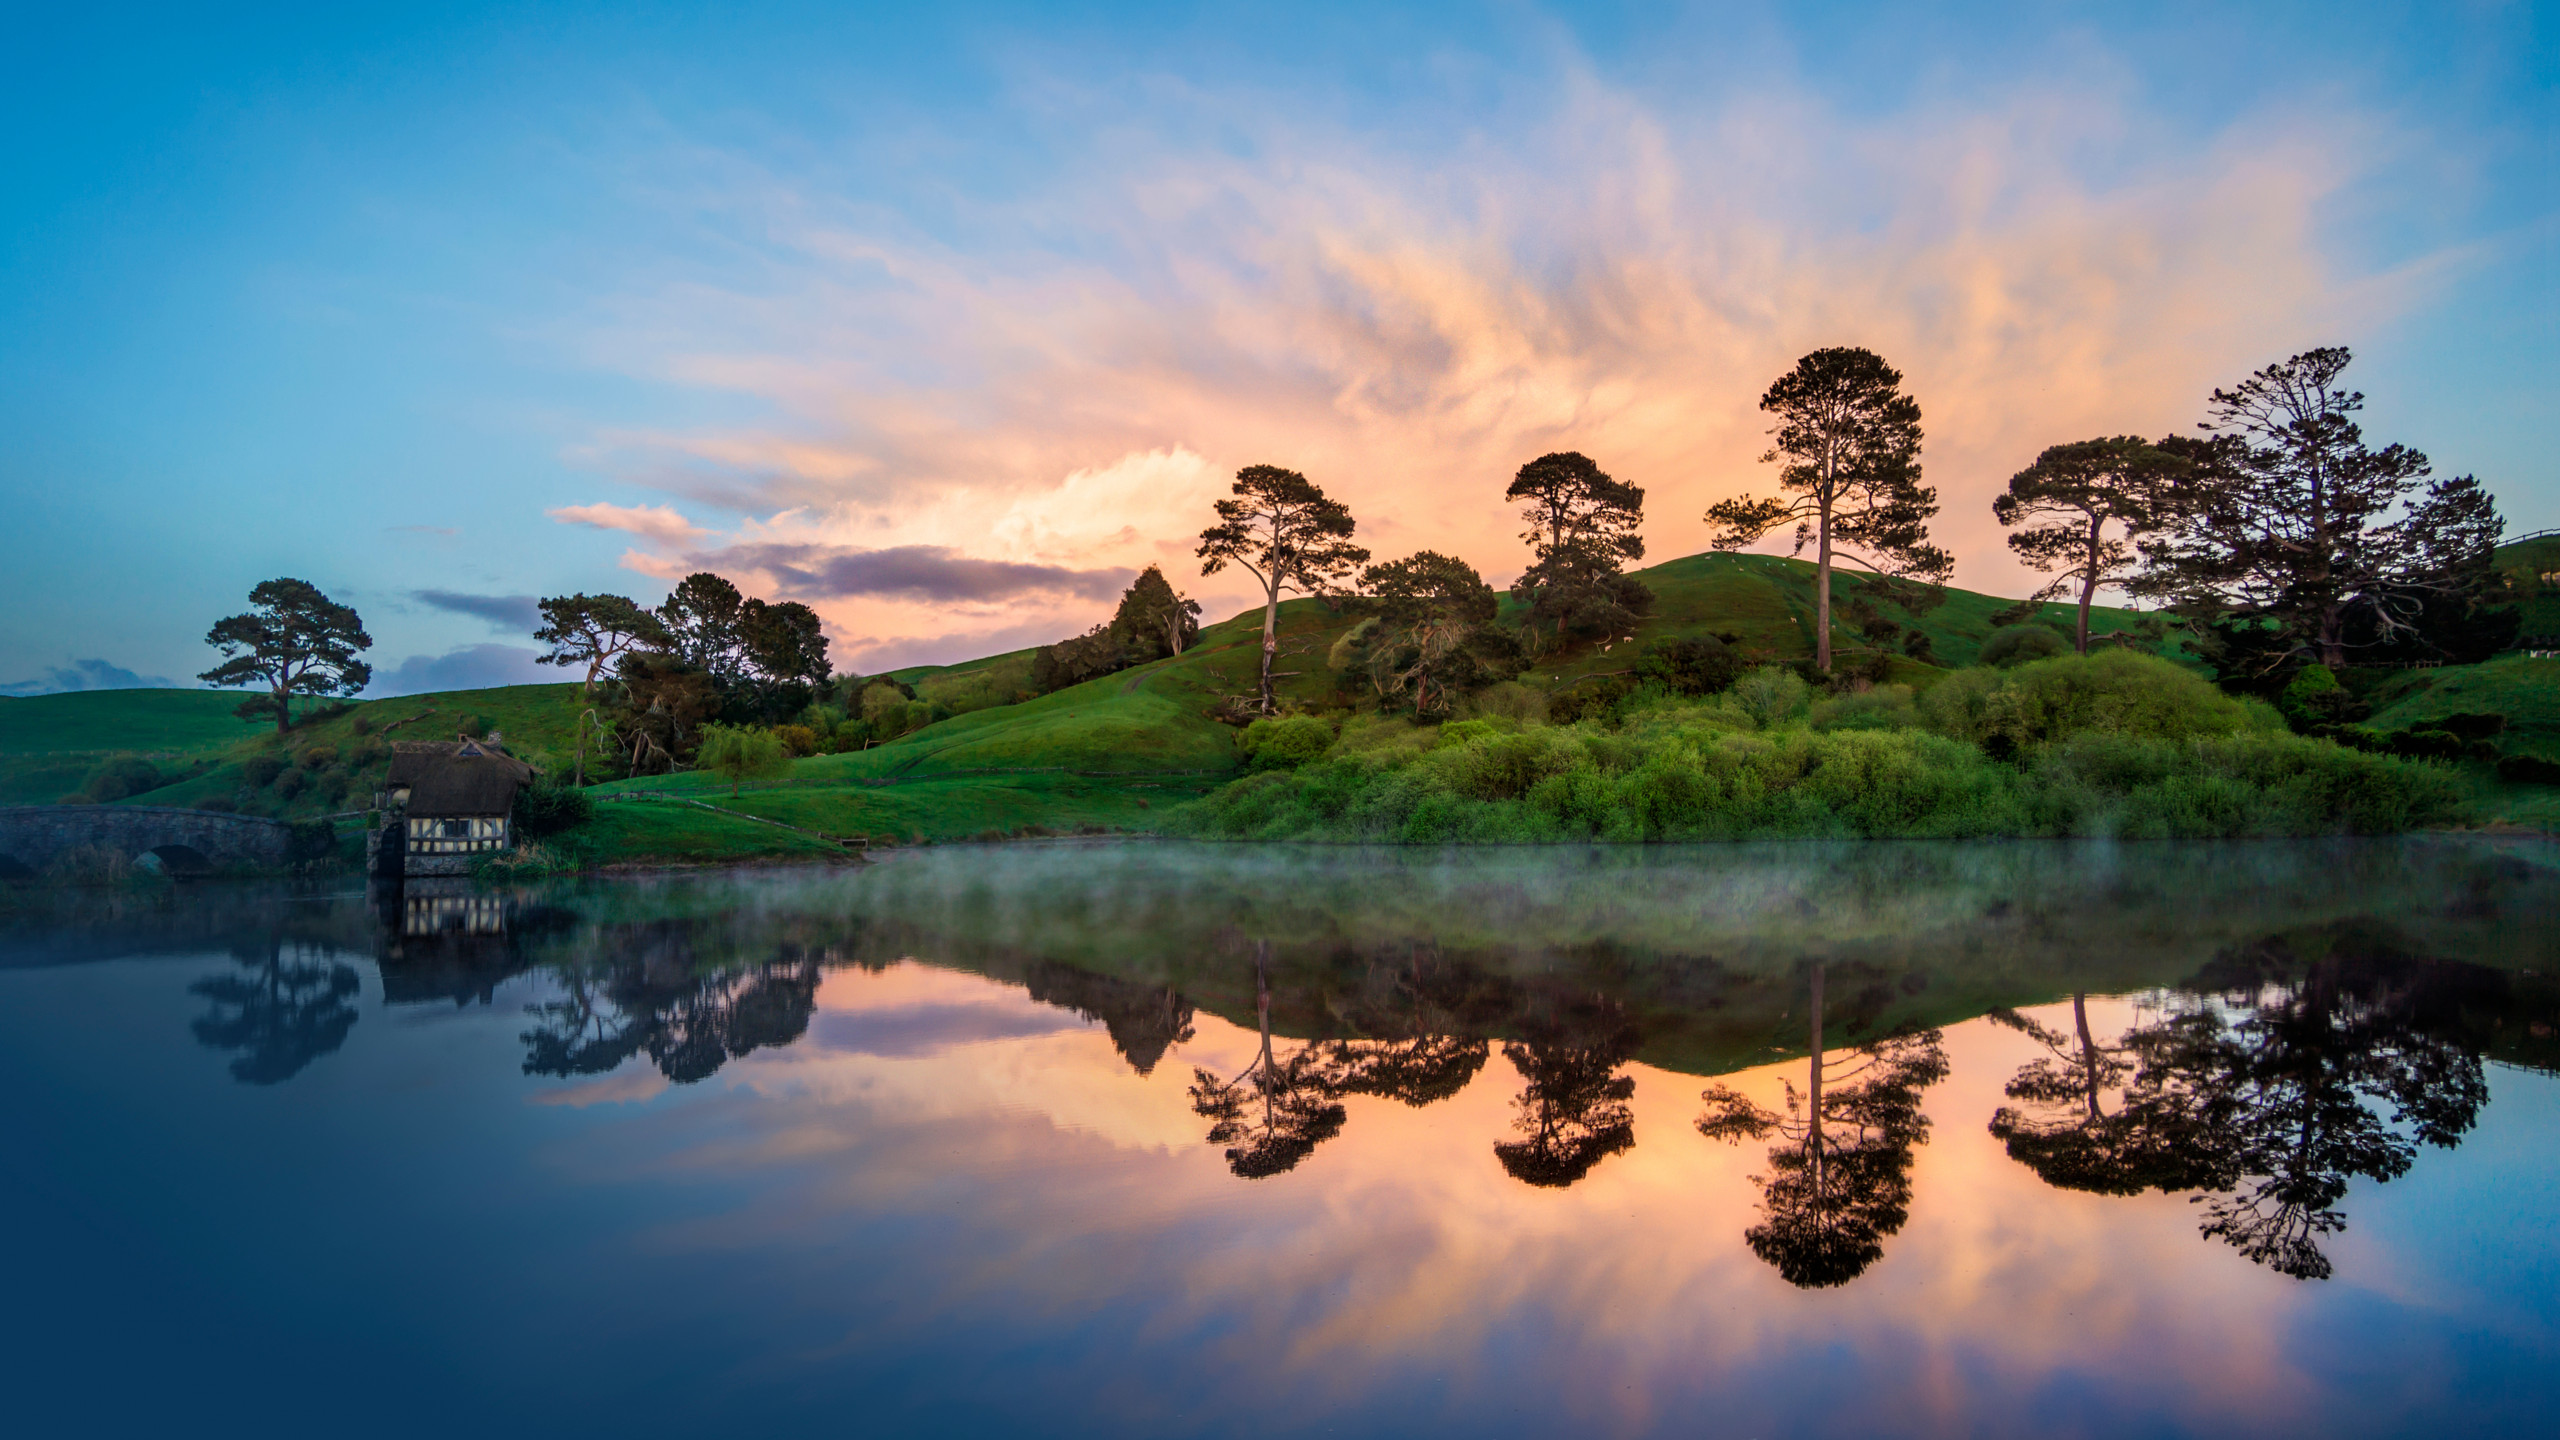 New Zealand: Hãy cùng khám phá những khung cảnh tuyệt đẹp của New Zealand trong bức ảnh này. Với nhiều màu sắc và địa hình đa dạng, New Zealand là một điểm du lịch tuyệt vời. Hình ảnh này sẽ đưa bạn đến cuộc phiêu lưu thực sự.